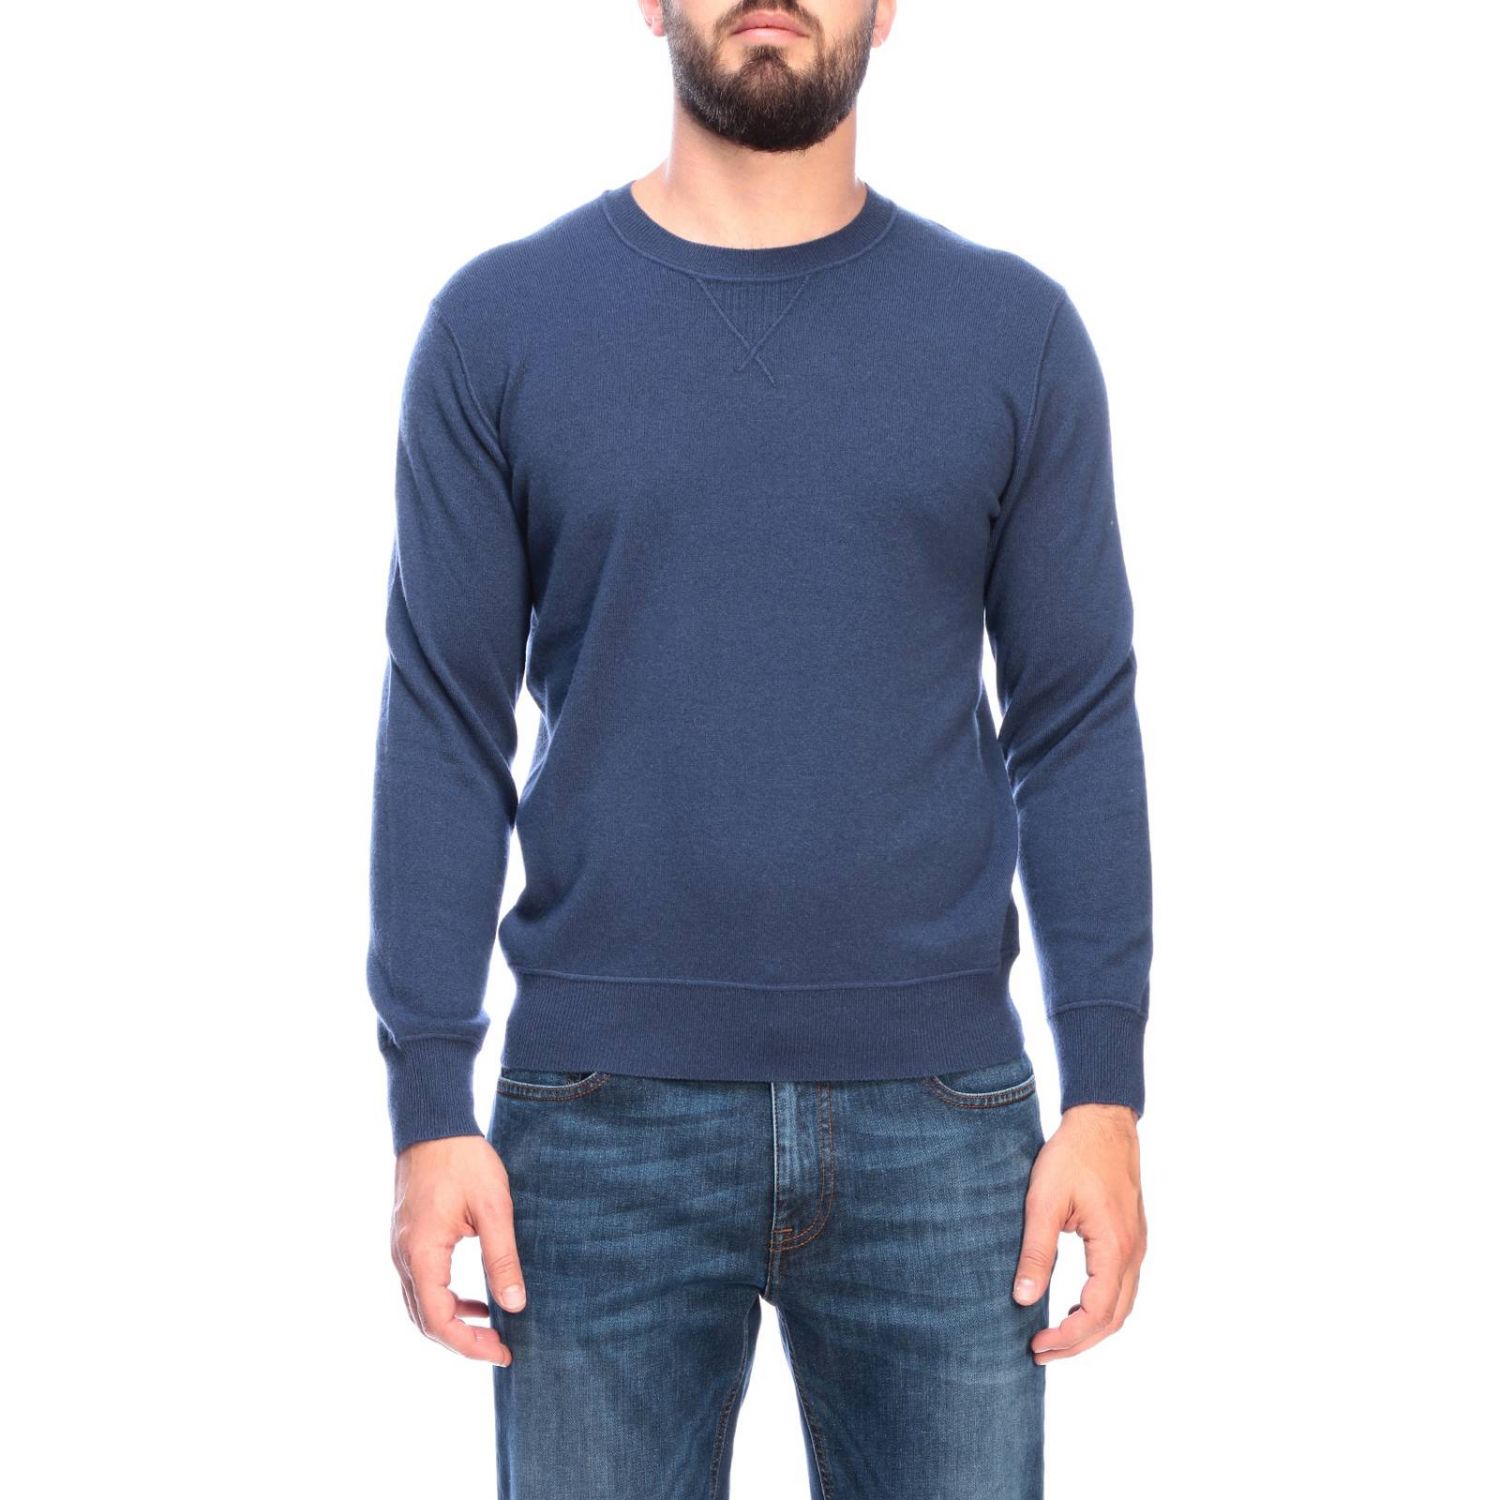 Z Zegna Outlet: sweater for man - Avion | Z Zegna sweater ZZ110 VTH10 ...